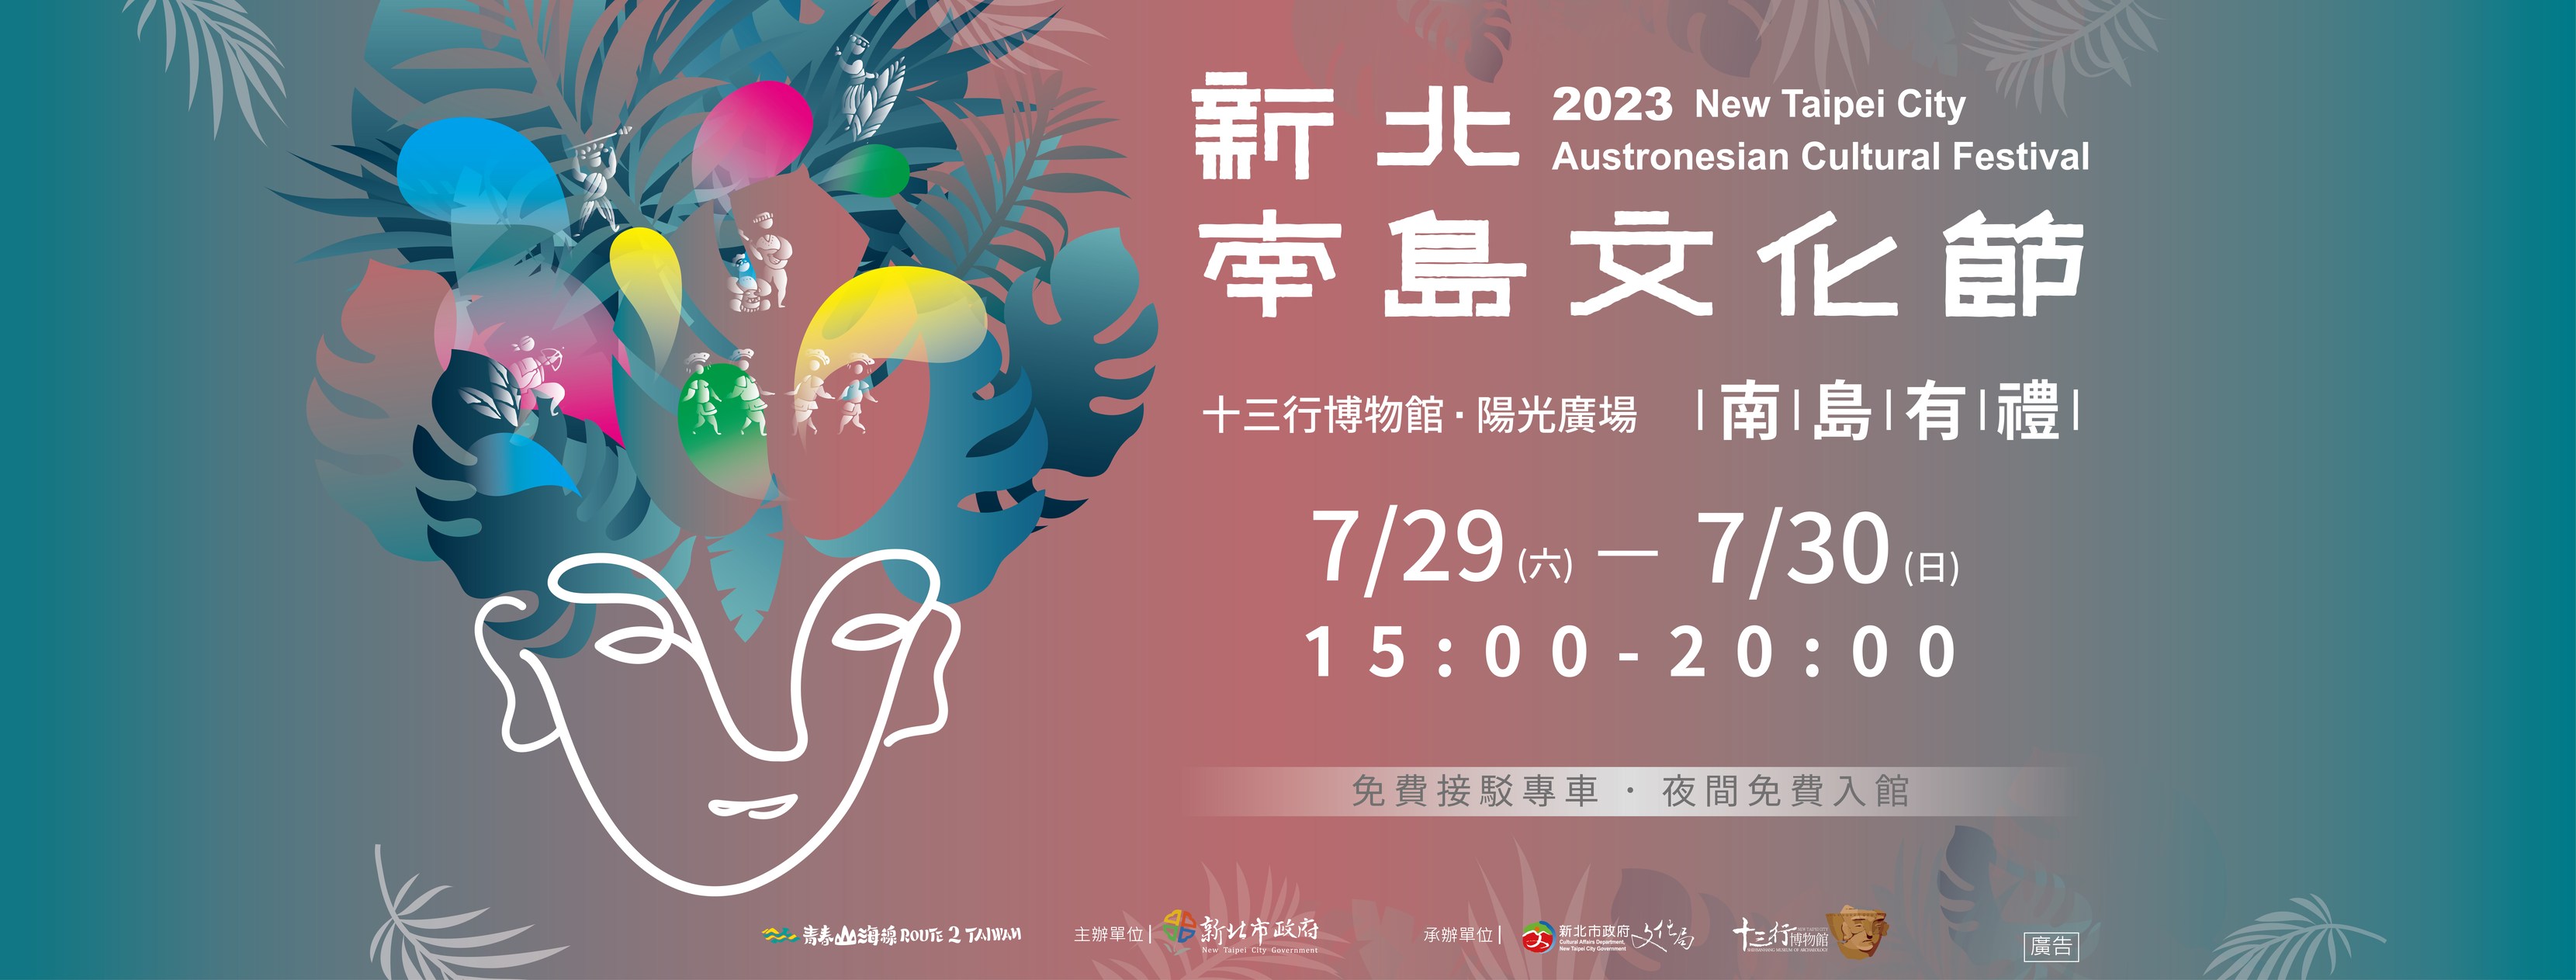 Festival New Taipei City Austronesian Cultural diadakan dengan megah di Shihsanhang Museum of Archeology.  (Sumber foto : Shihsanhang Museum of Archeology)